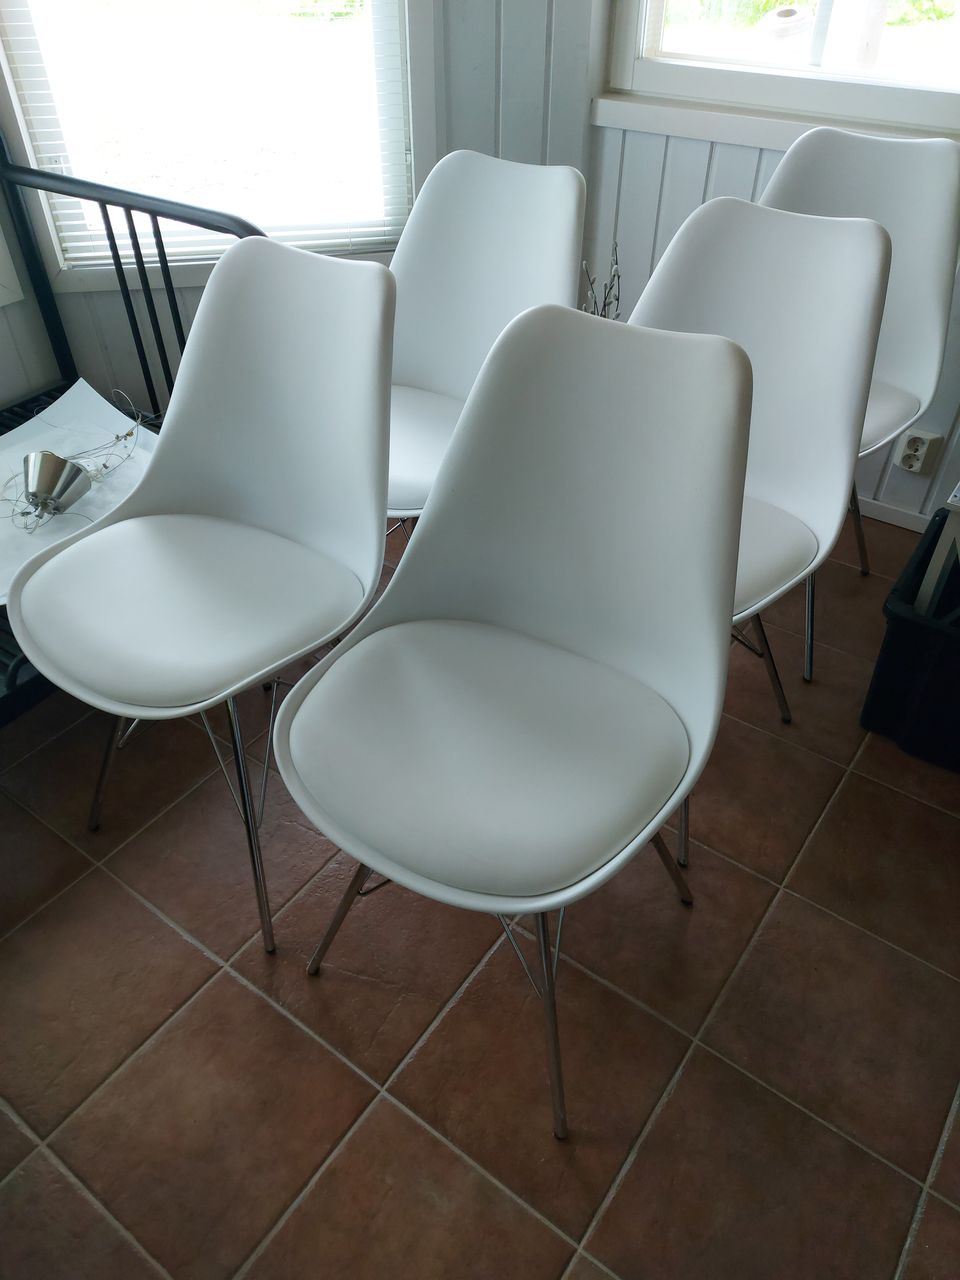 10kpl tuoleja